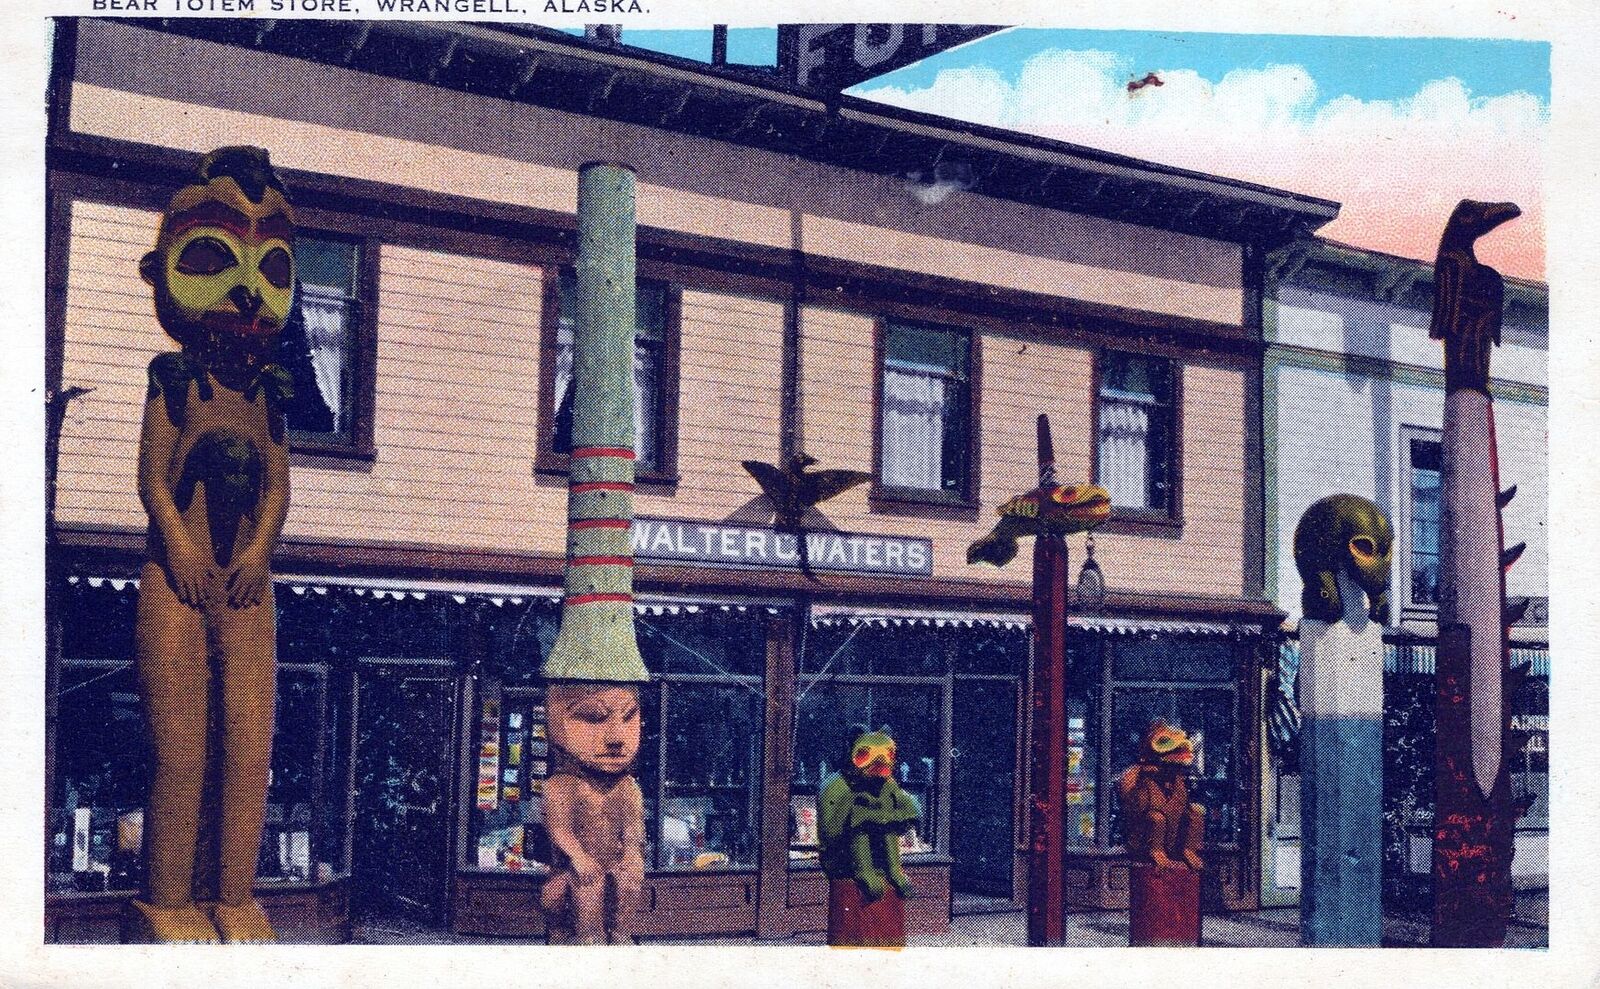 WRANGELL AK - Bear Totem Store Postcard